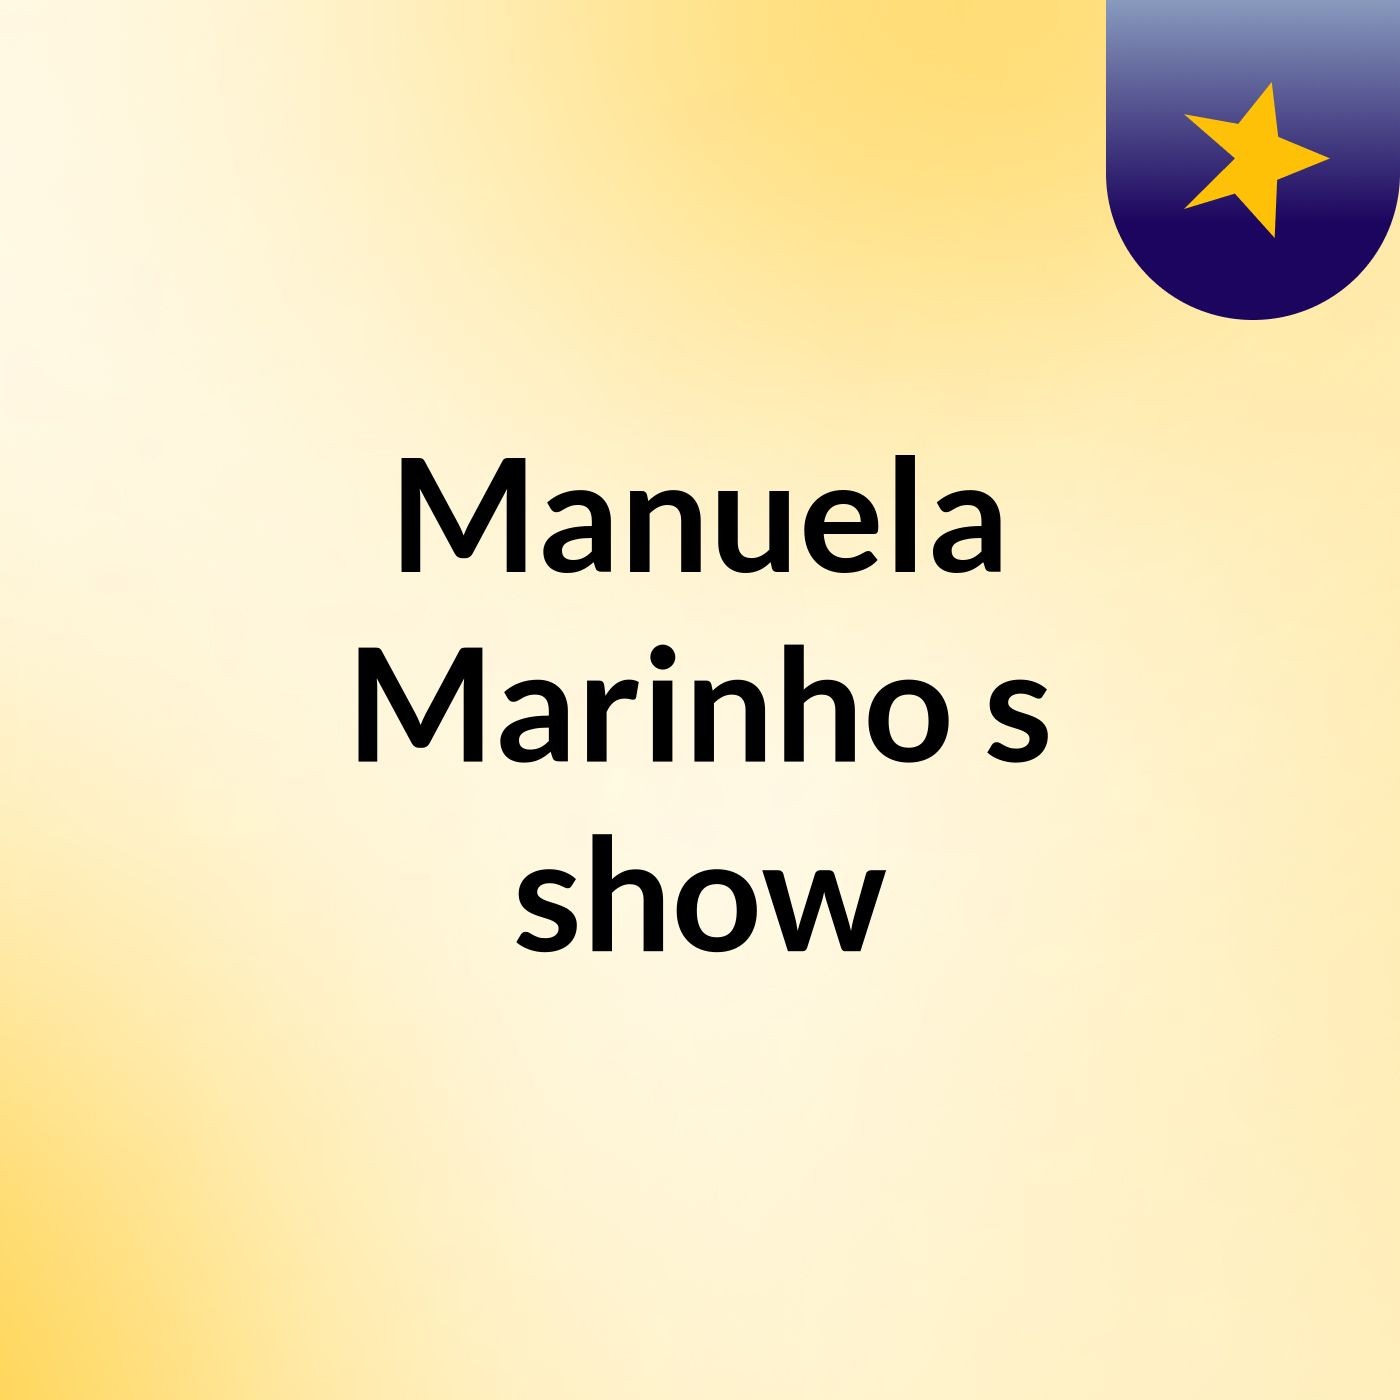 Manuela Marinho's show